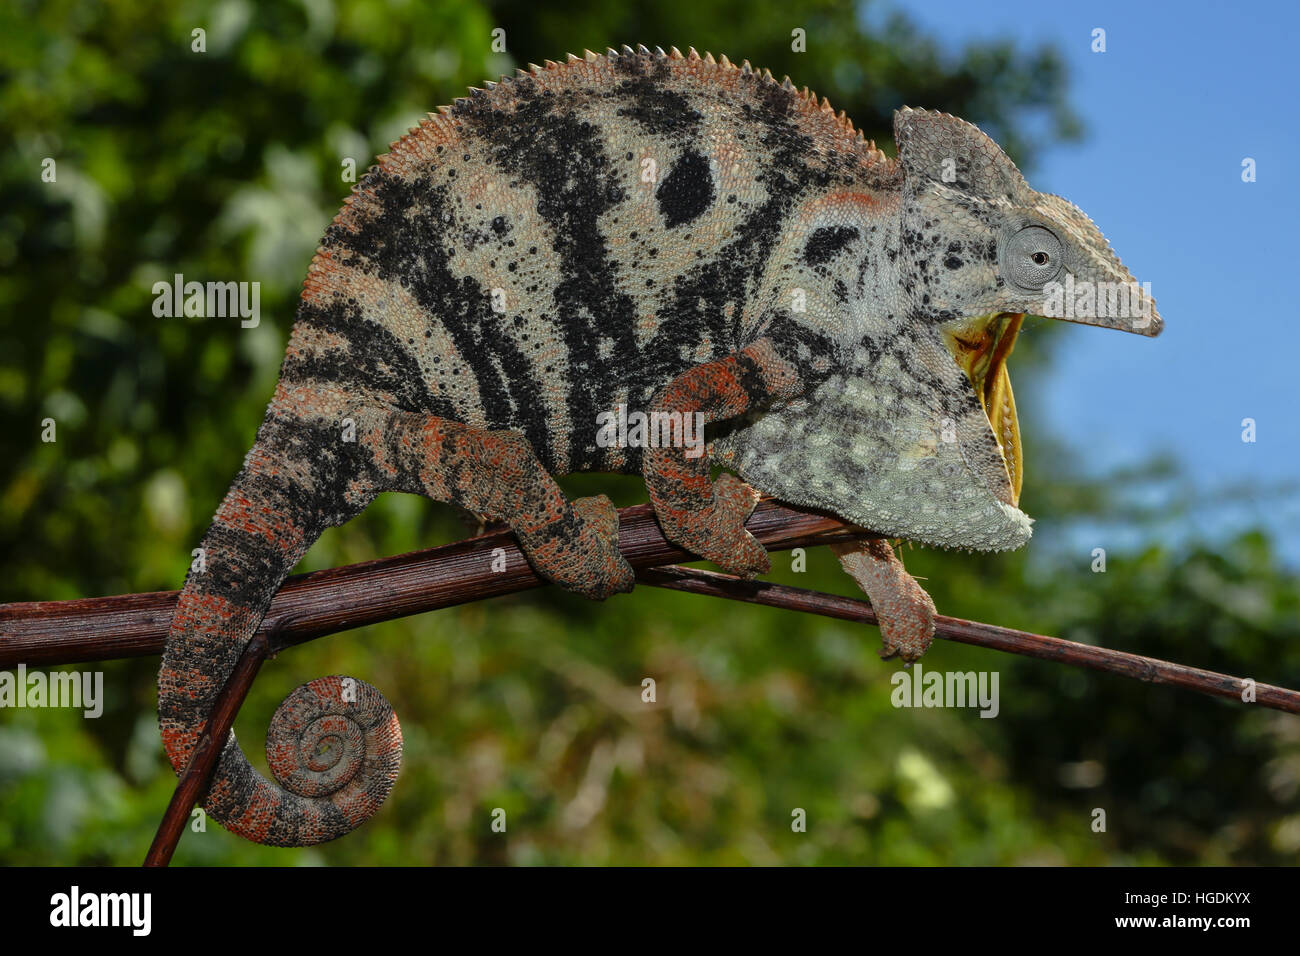 Open mouthed female Malagasy Giant Chameleon (Furcifer oustaleti), Amborondolo, Sofia, Central Madagascar, Madagascar Stock Photo